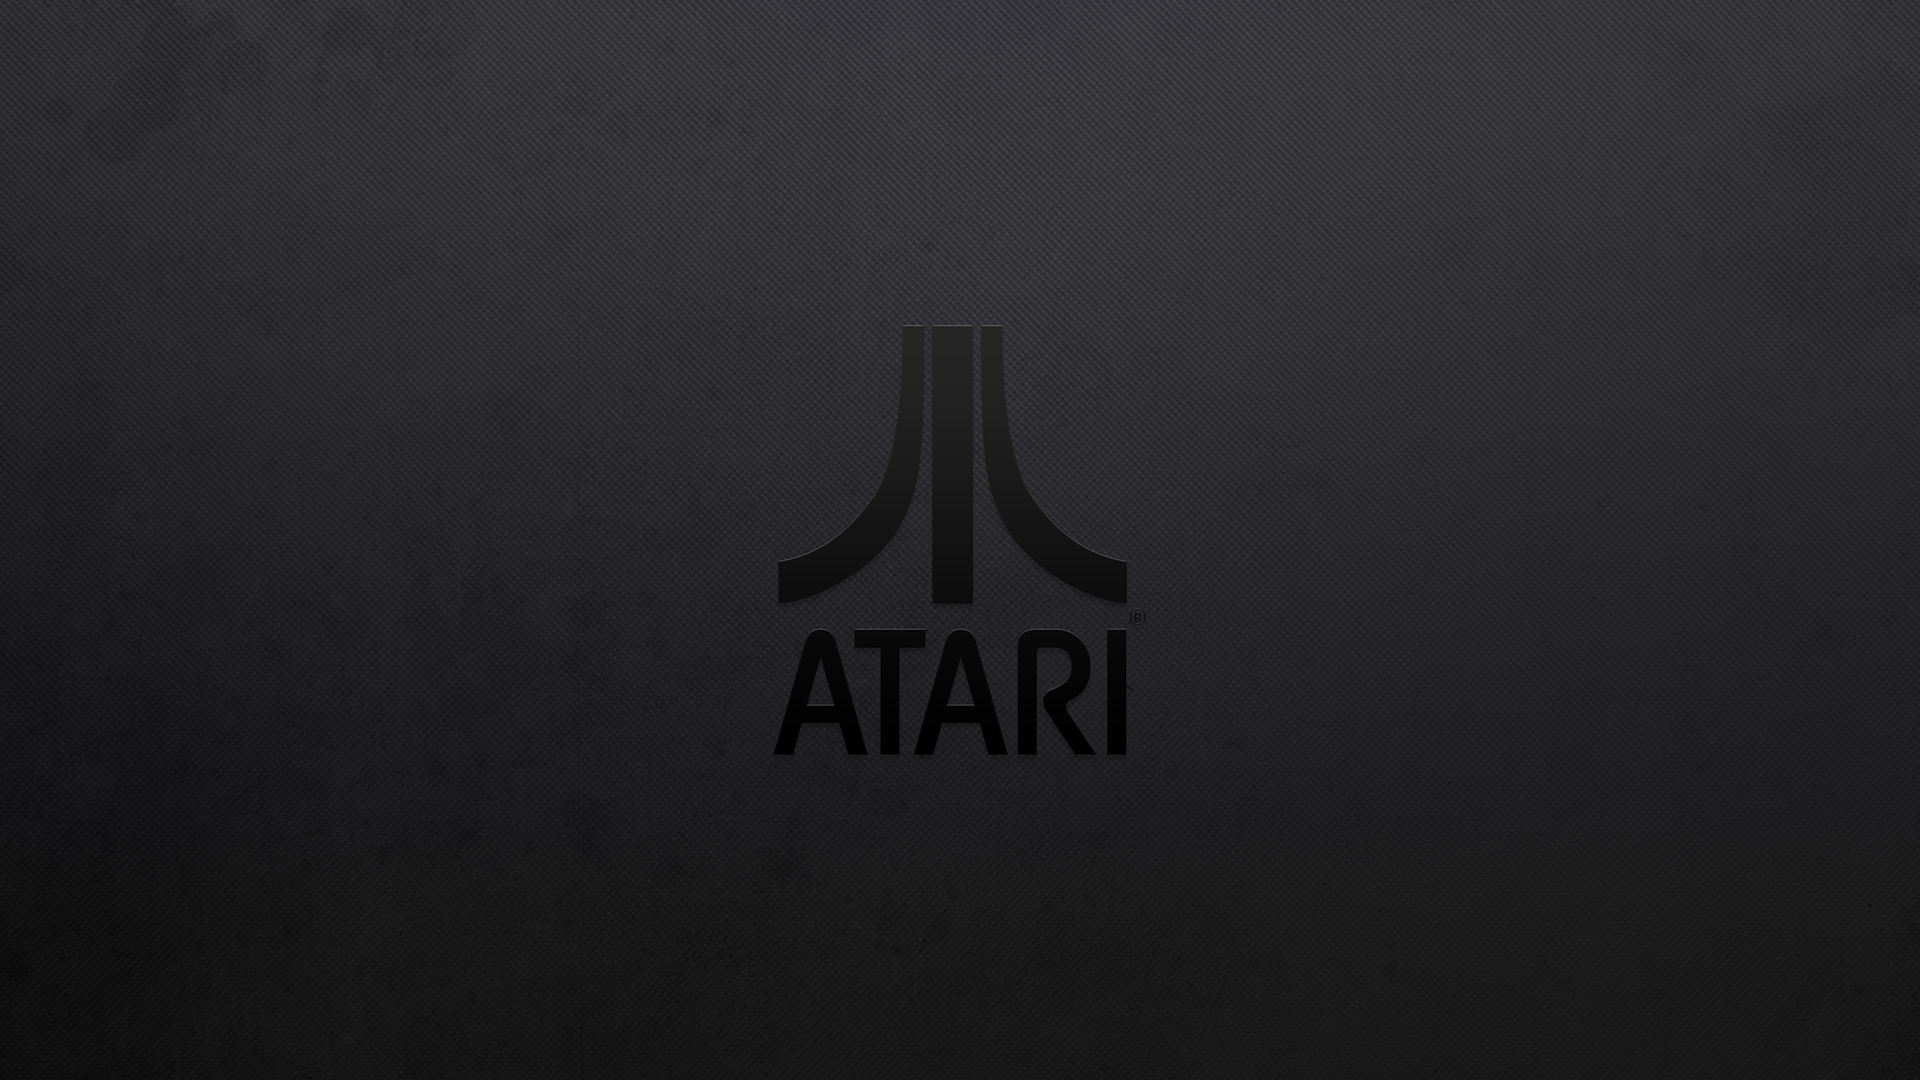 Video Game Atari HD Wallpaper